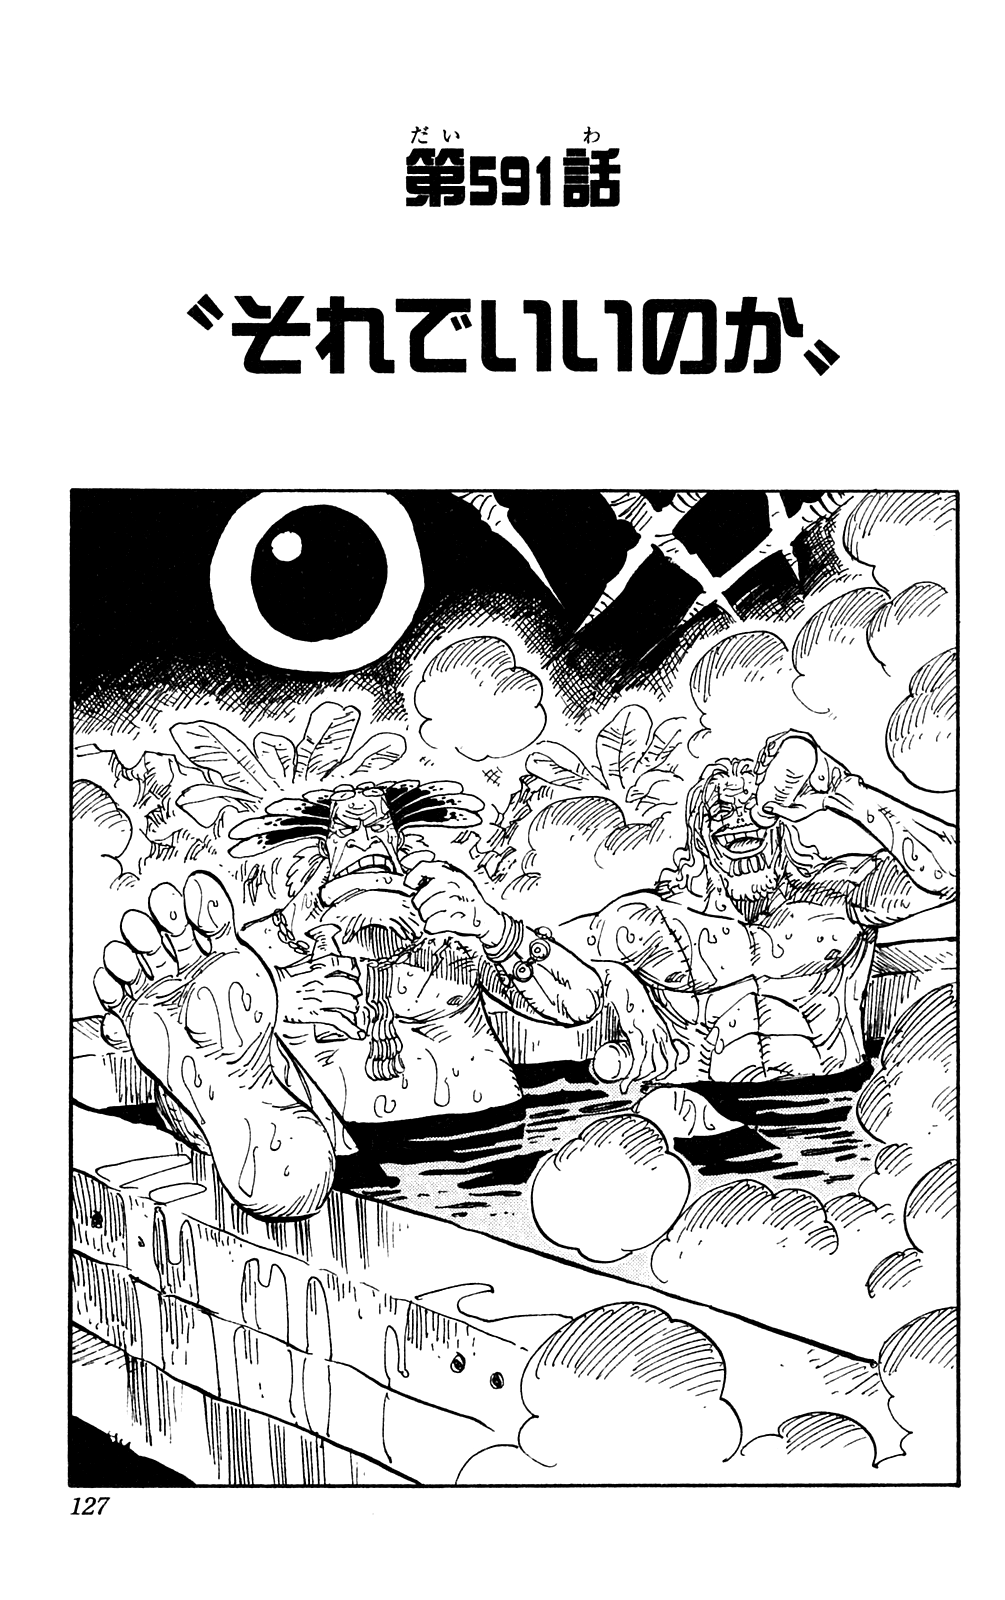 Chapter 591 One Piece Wiki Fandom